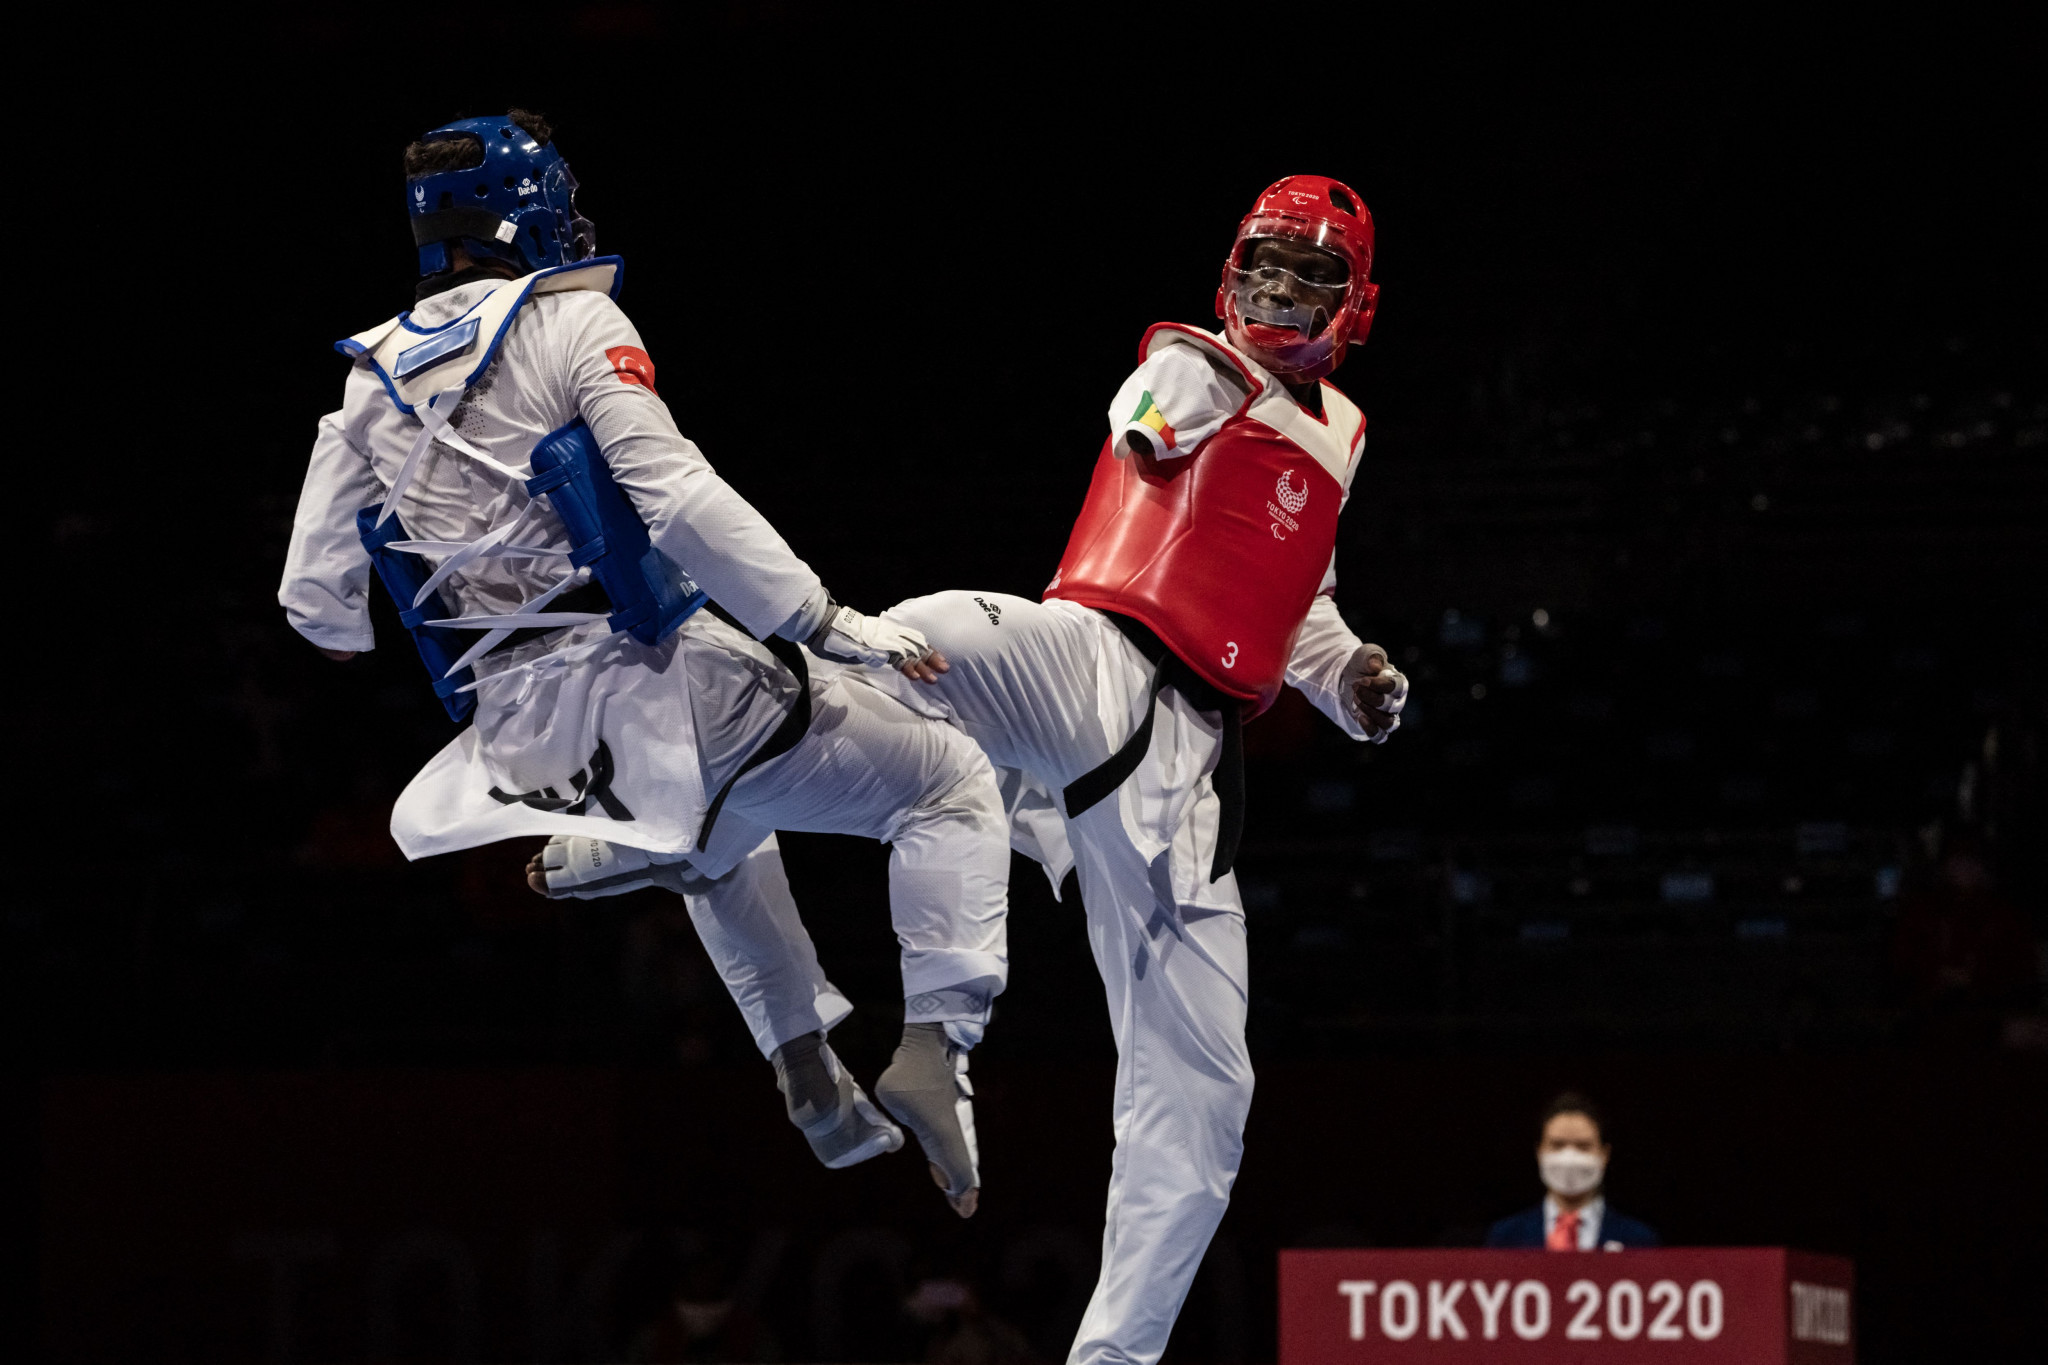 Taekwondo made its Paralympic debut at Tokyo 2020 ©Getty Images